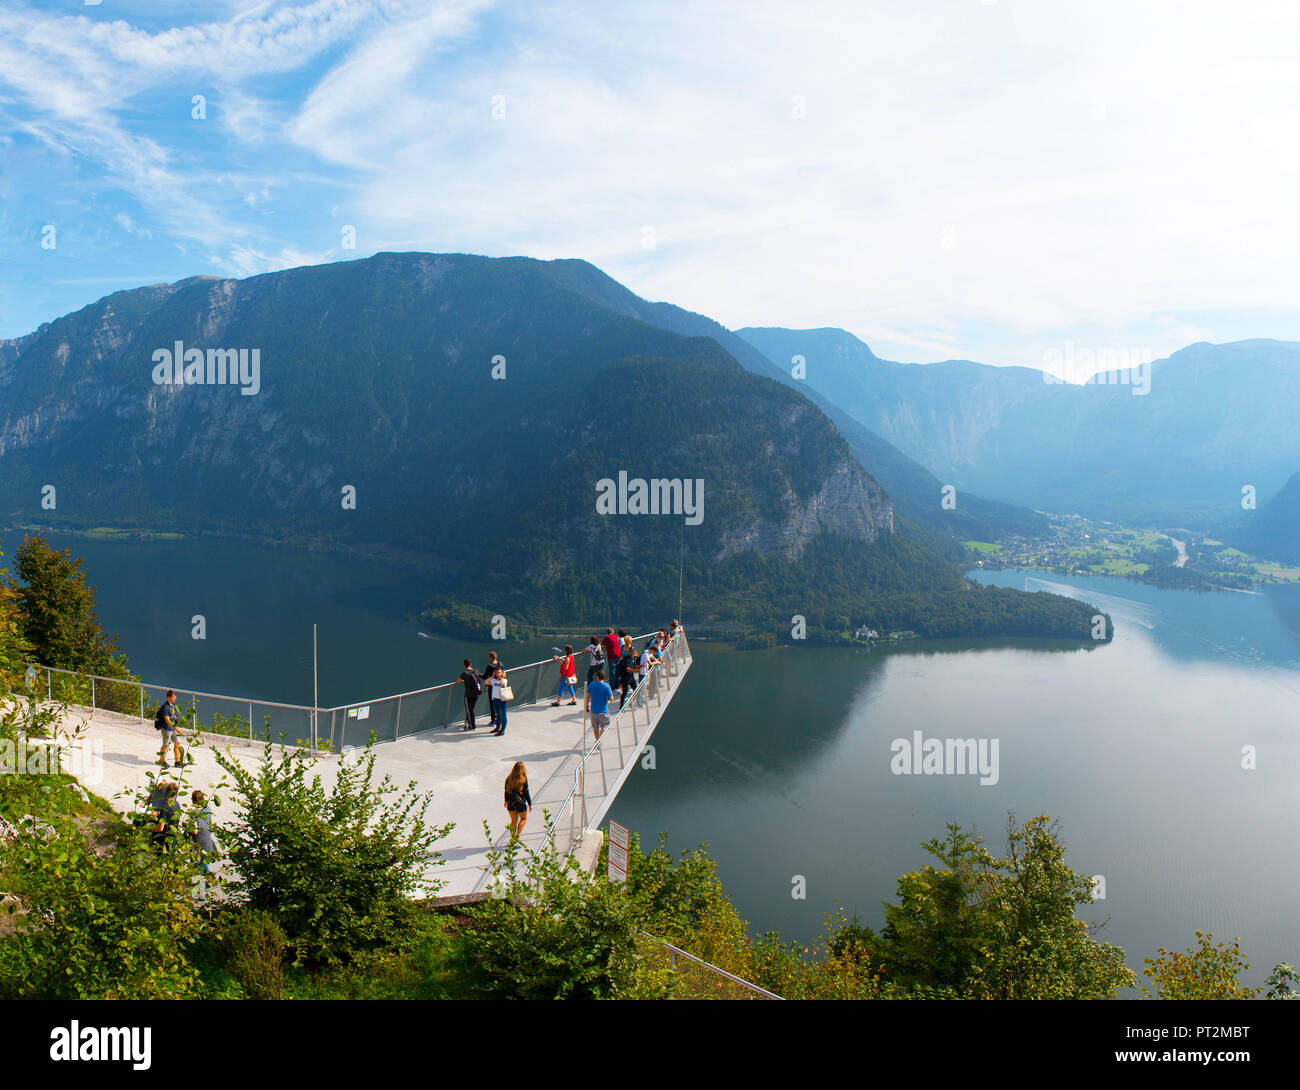 Austria, Austria superiore, regione del Salzkammergut, Hallstatt, vista dalla piattaforma di visualizzazione Welterbeblick sul lago Hallstatt, turisti, Foto Stock